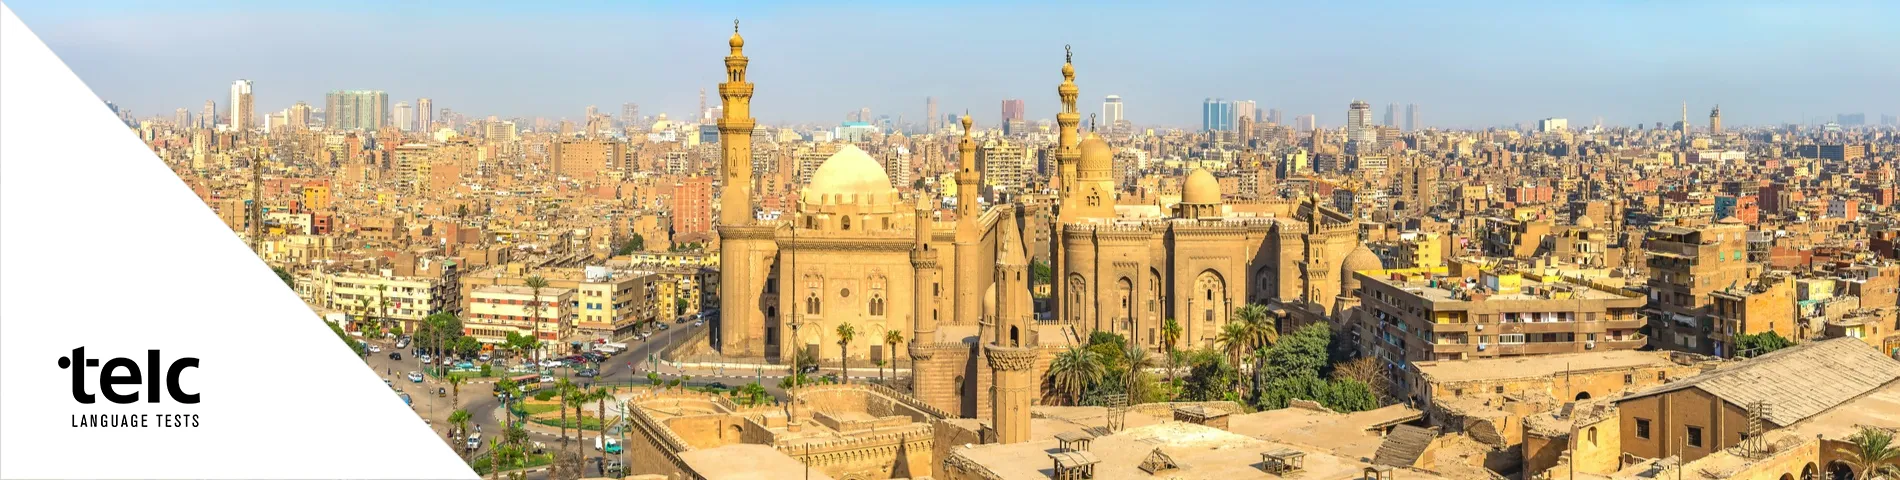 Cairo - 